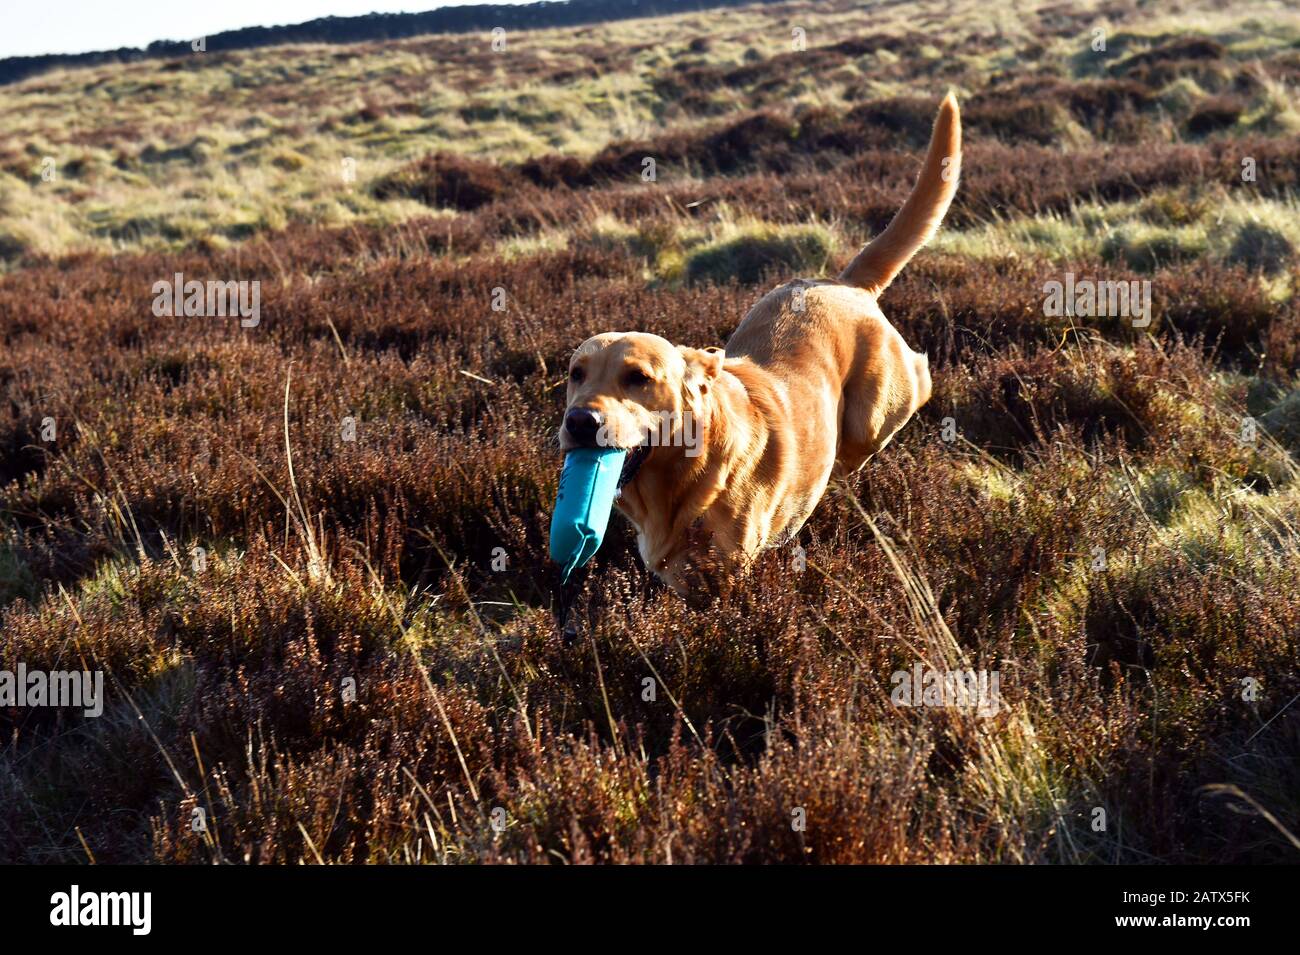 Un perro de pistola corre con su pájaro simulado durante una sesión de entrenamiento de perros de pistola Barden Moor Yorkshire Dales UK Foto de stock